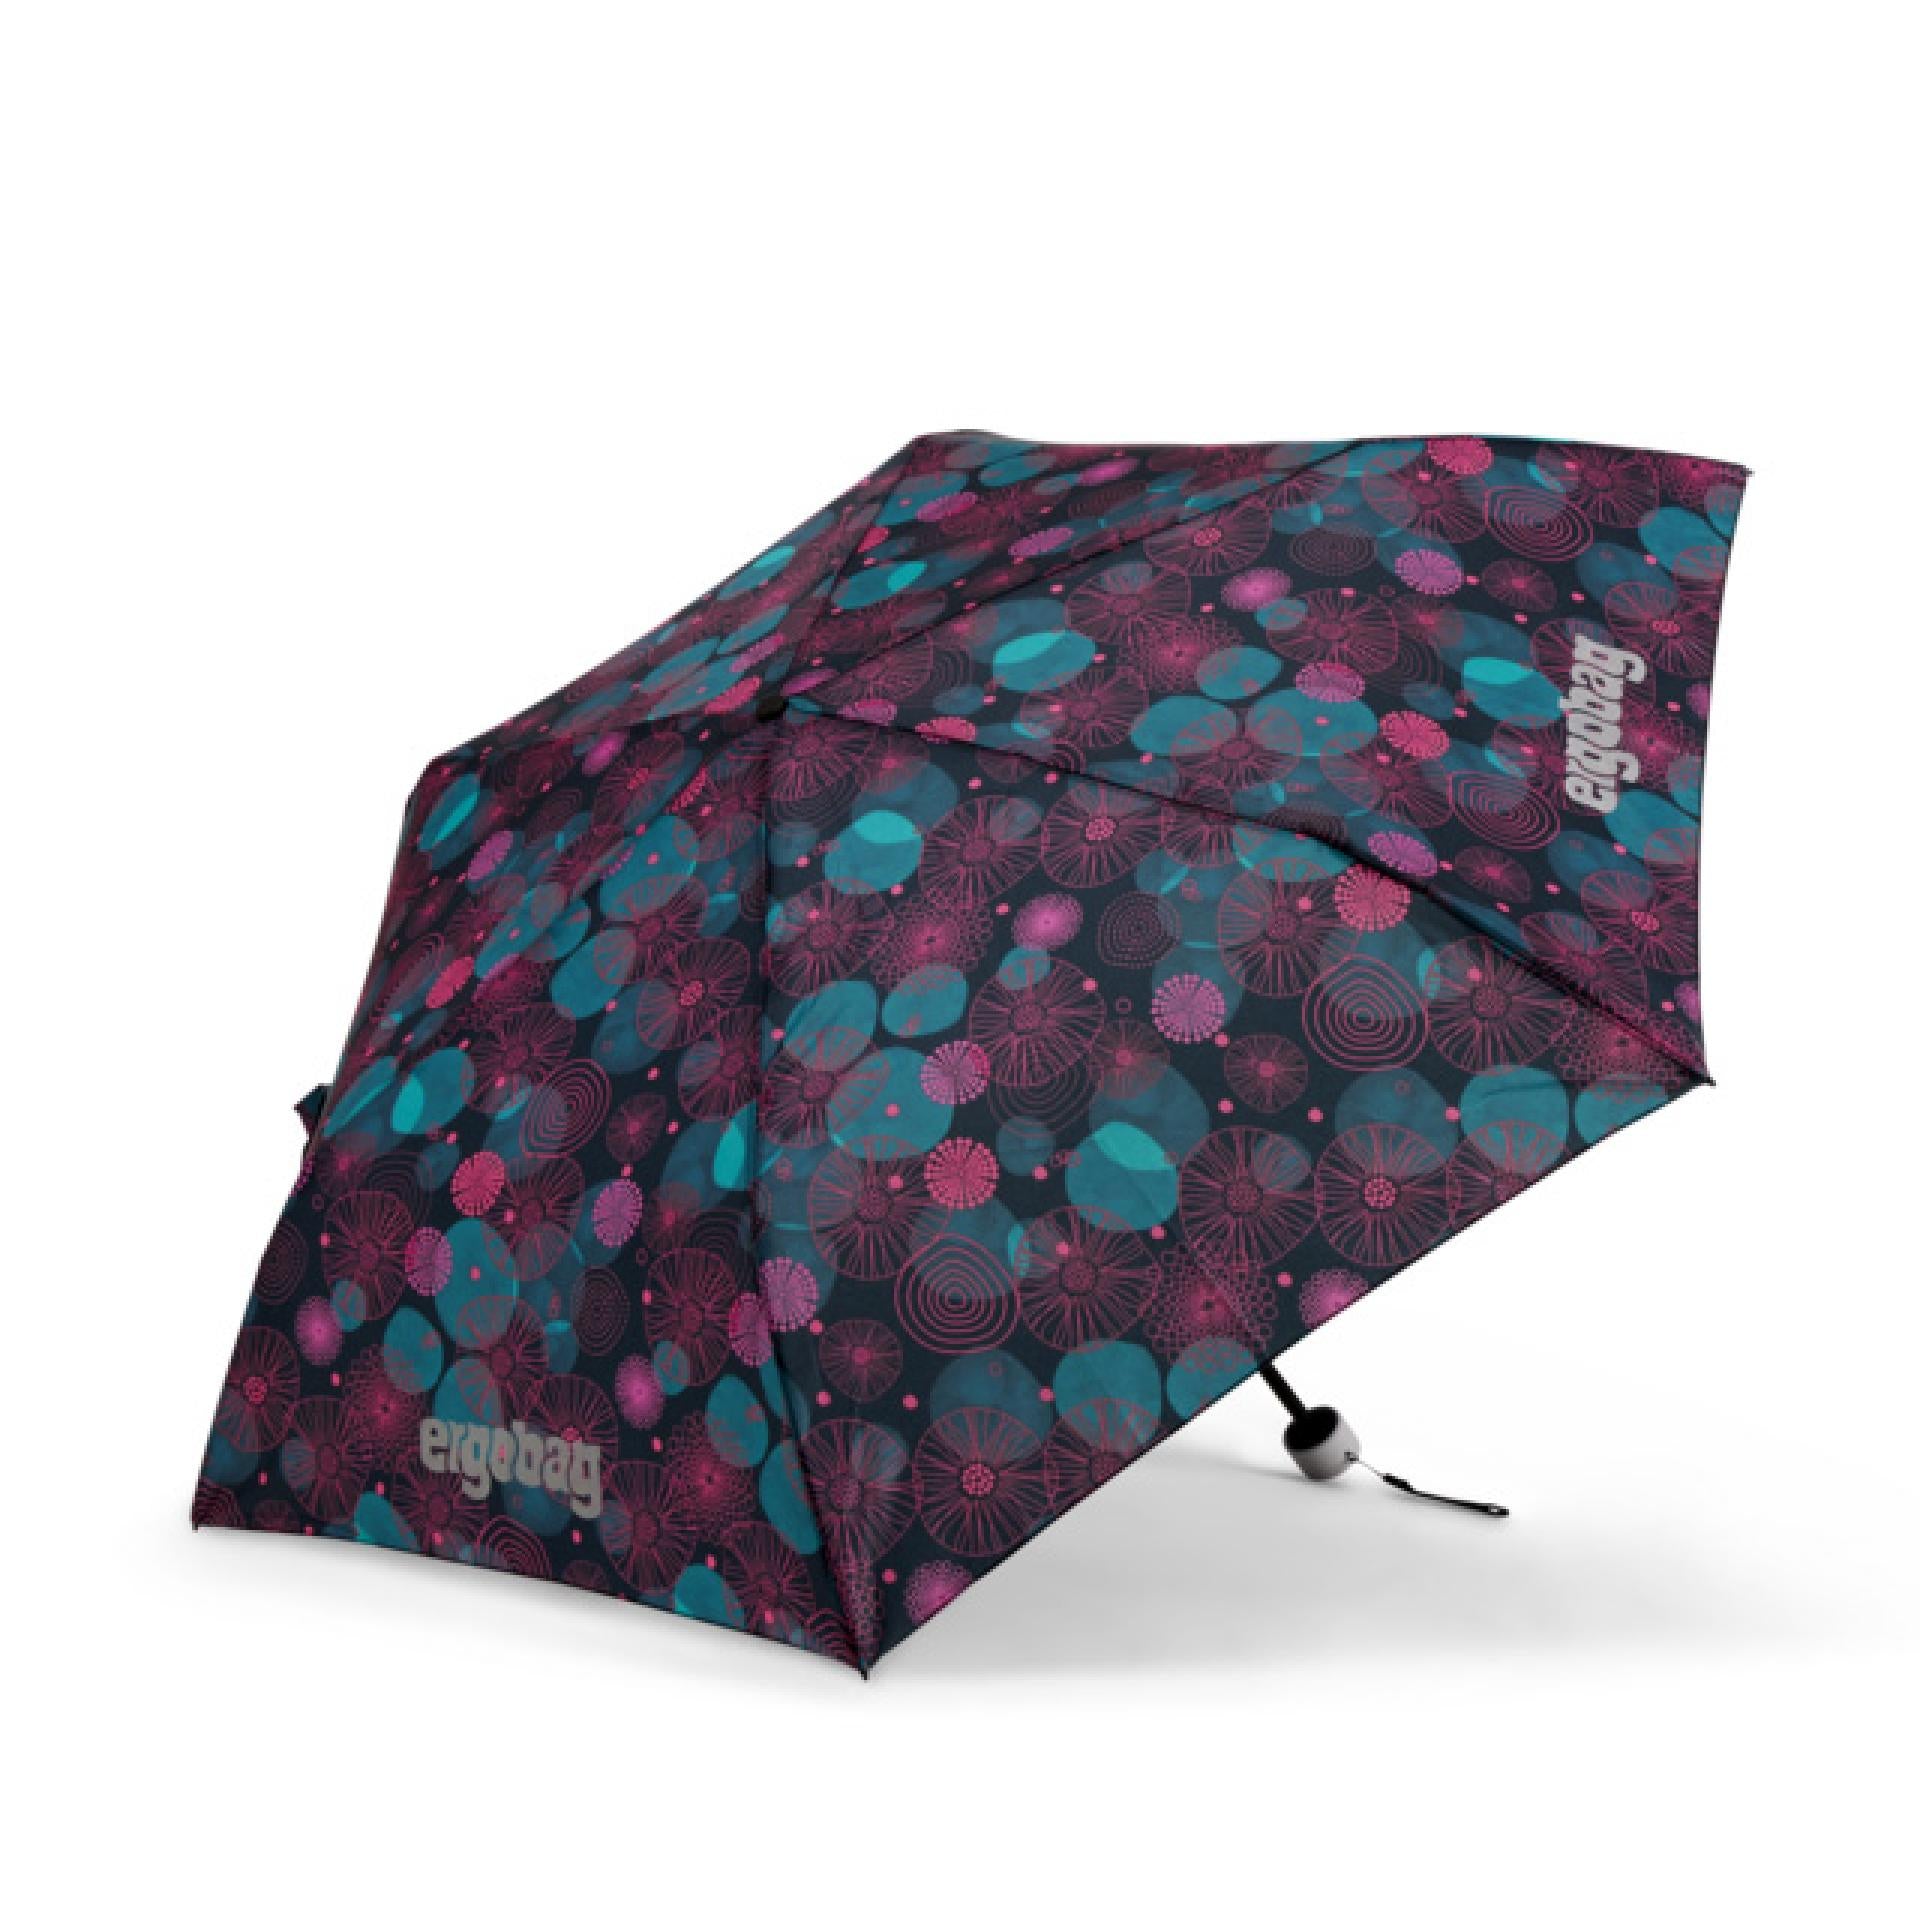 Ergobag Regenschirm - Variante: KorallBär